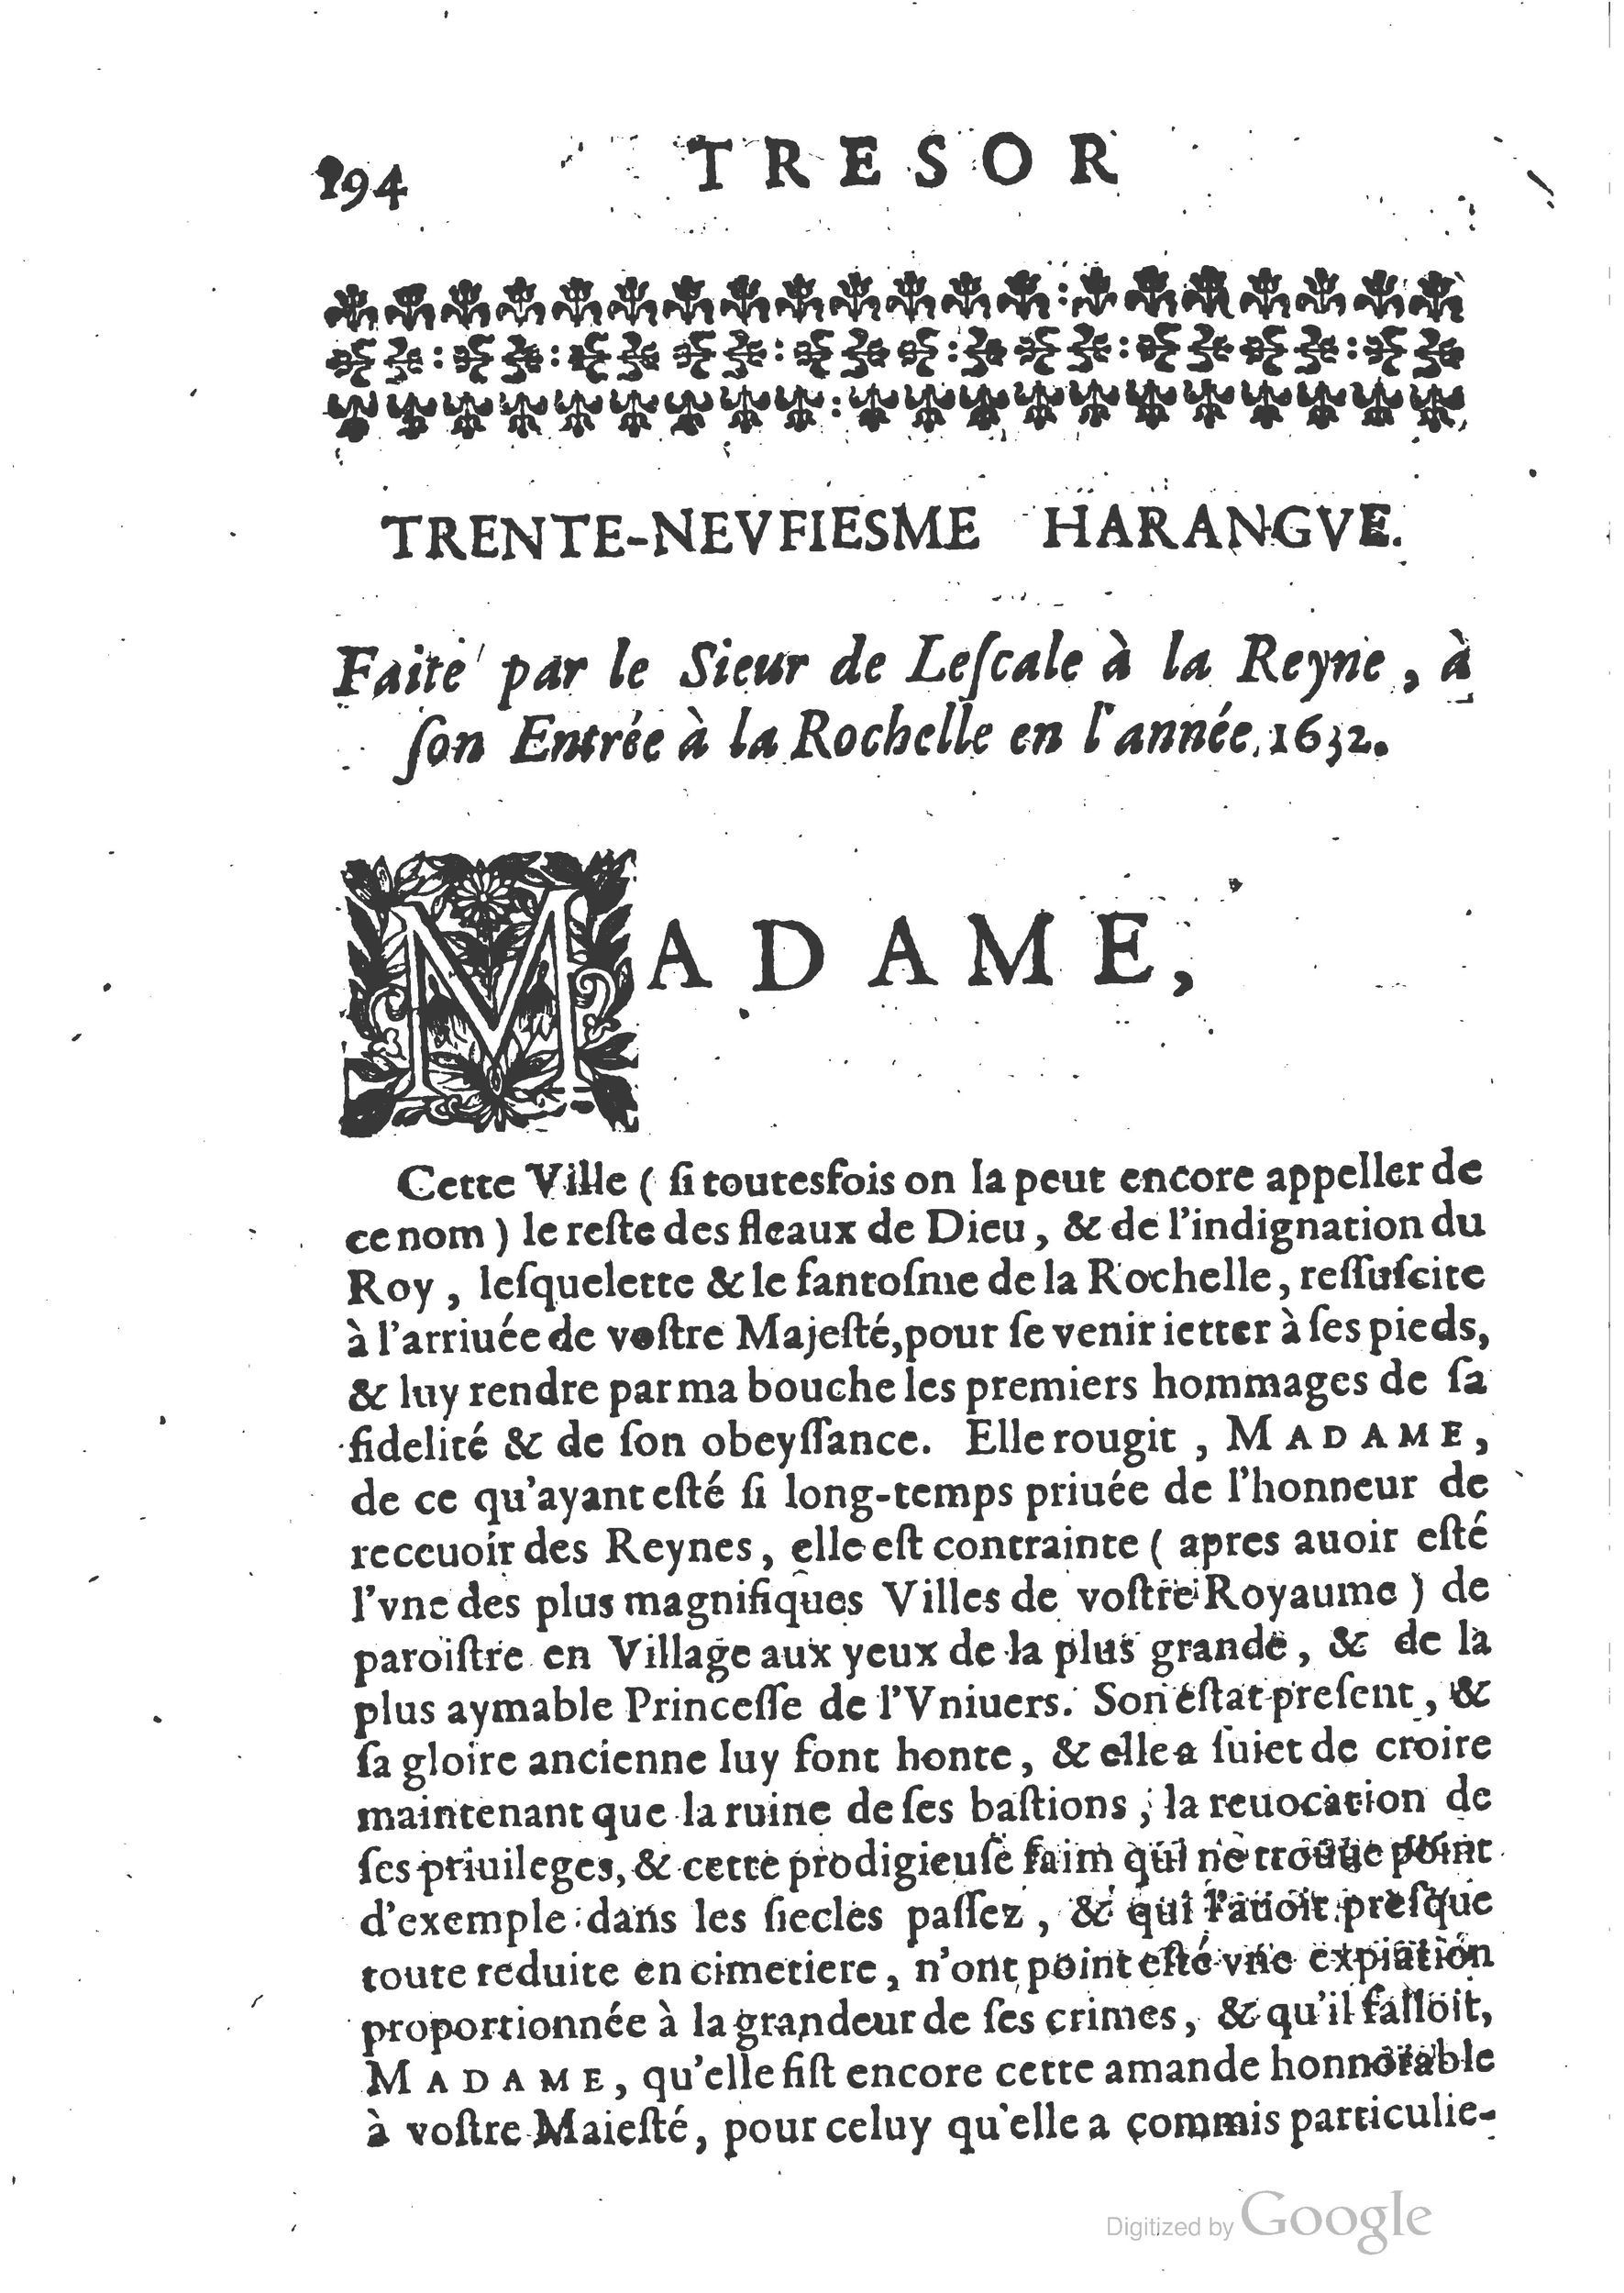 1654 Trésor des harangues, remontrances et oraisons funèbres Robin_BM Lyon_Page_213.jpg